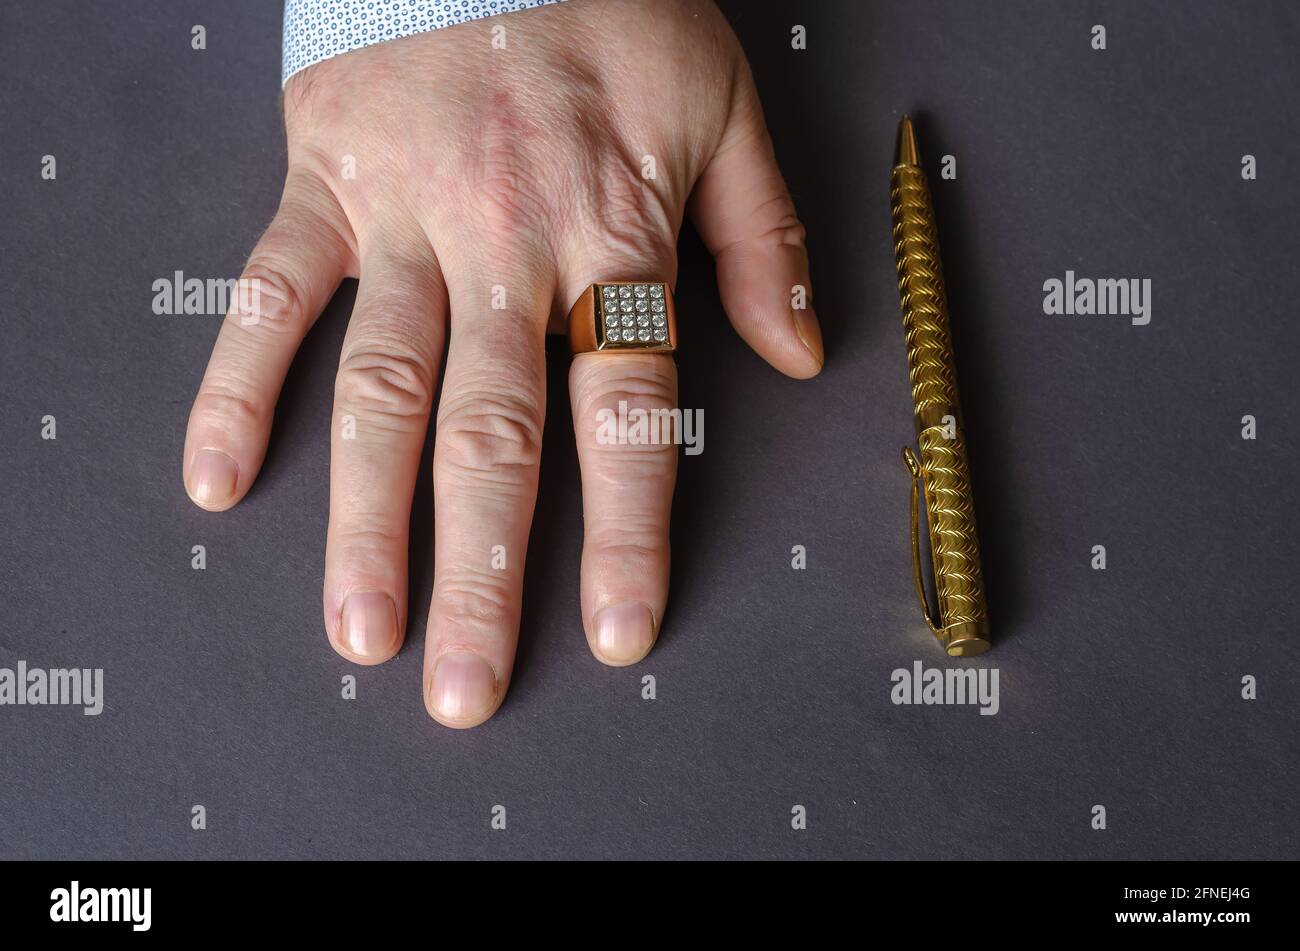 Eine Hand mit goldenem Ring und Stift auf grauem Hintergrund. Die rechte  Hand eines erwachsenen Mannes mit einem Siegelring auf seinem Zeigefinger.  Draufsicht Stockfotografie - Alamy